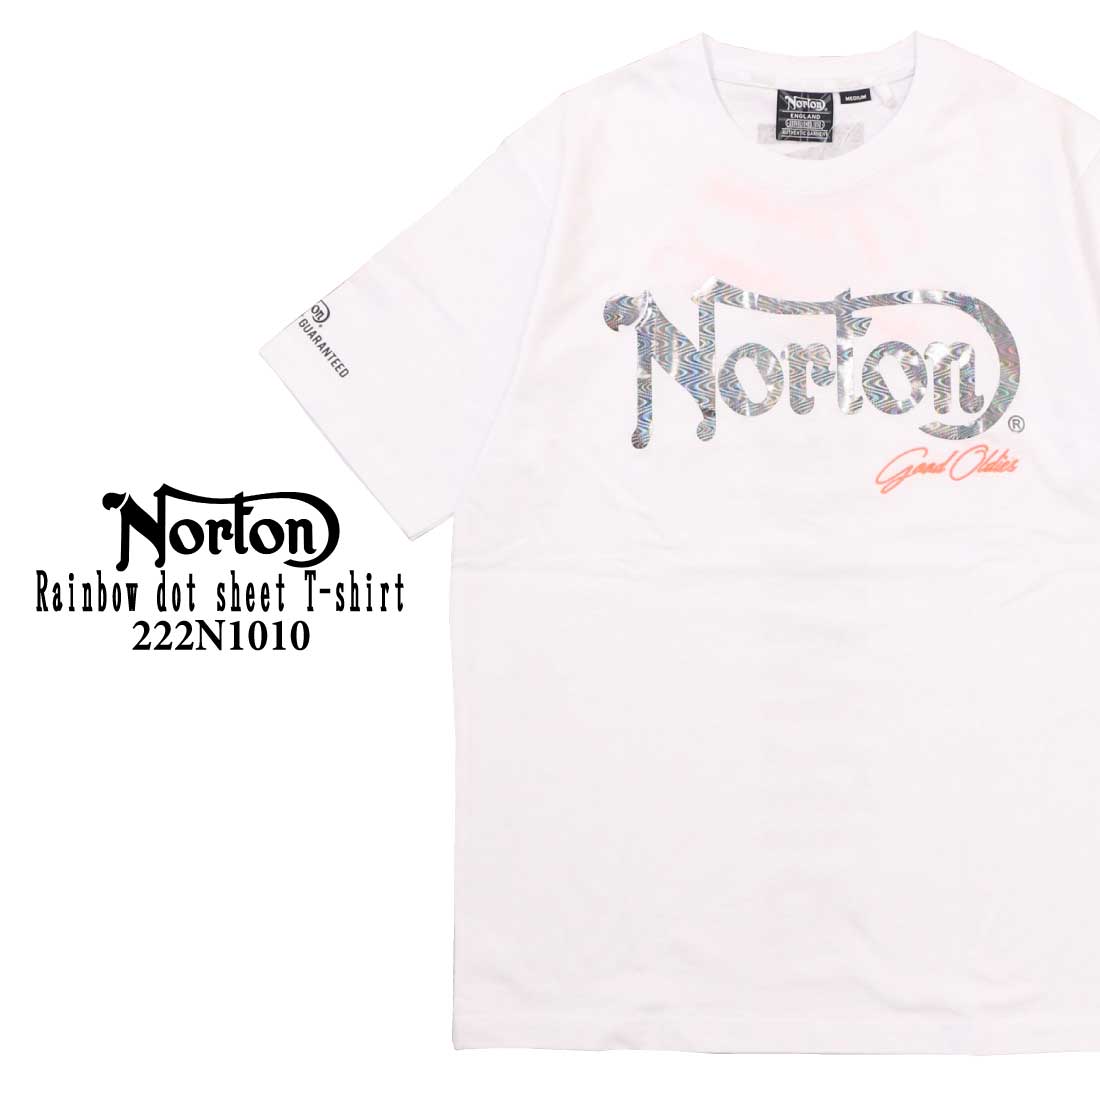 Norton ノートン 服 半袖 Tシャツ 222N1010 レインボードットシート Tシャツ メンズ アメカジ 001 009